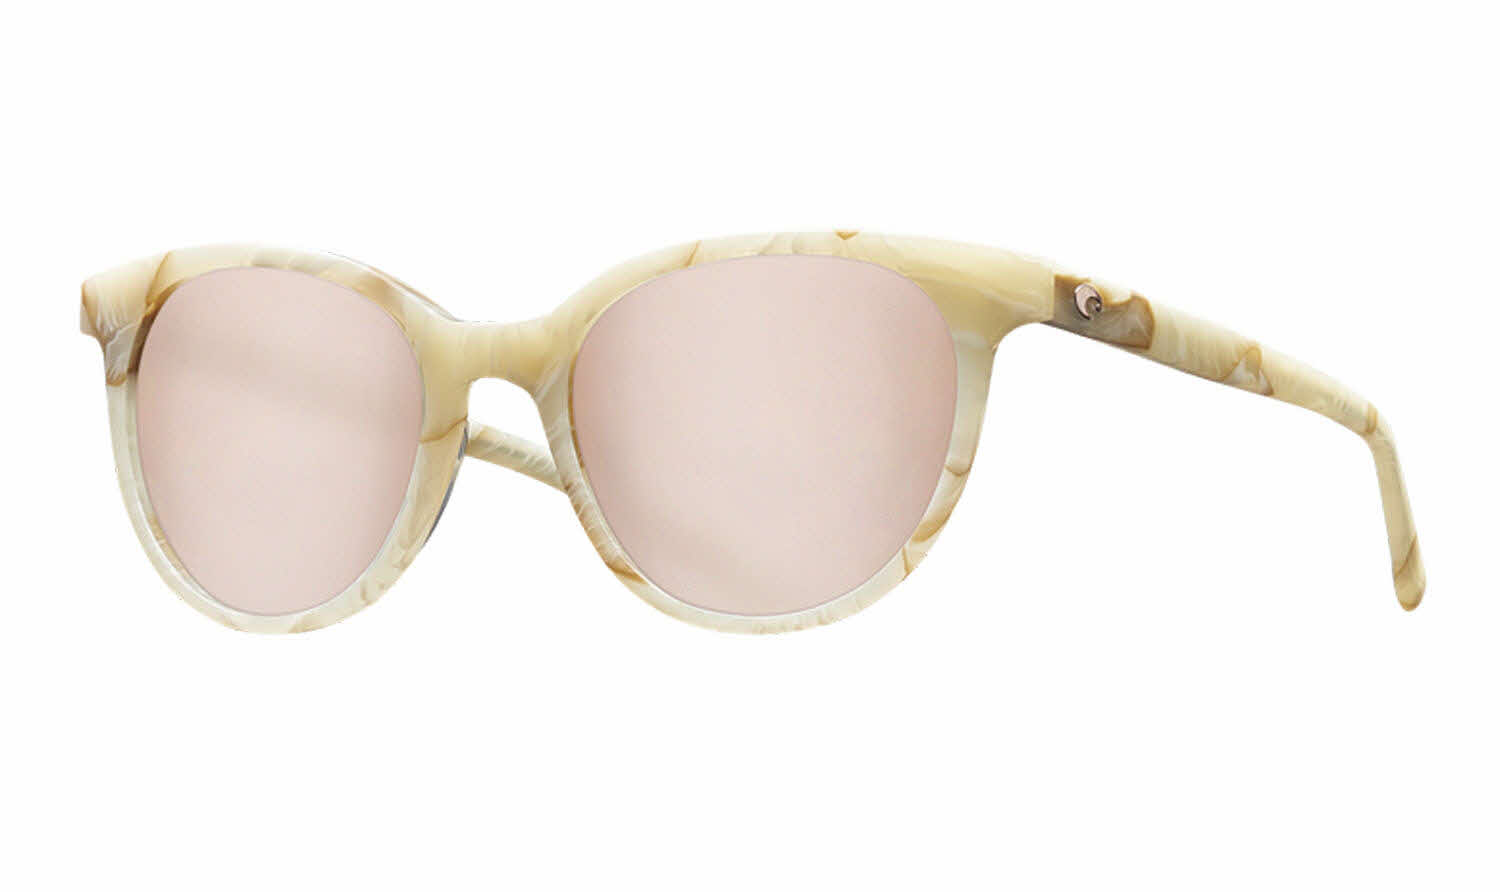 Costa Isla - Del Mar Collection Sunglasses